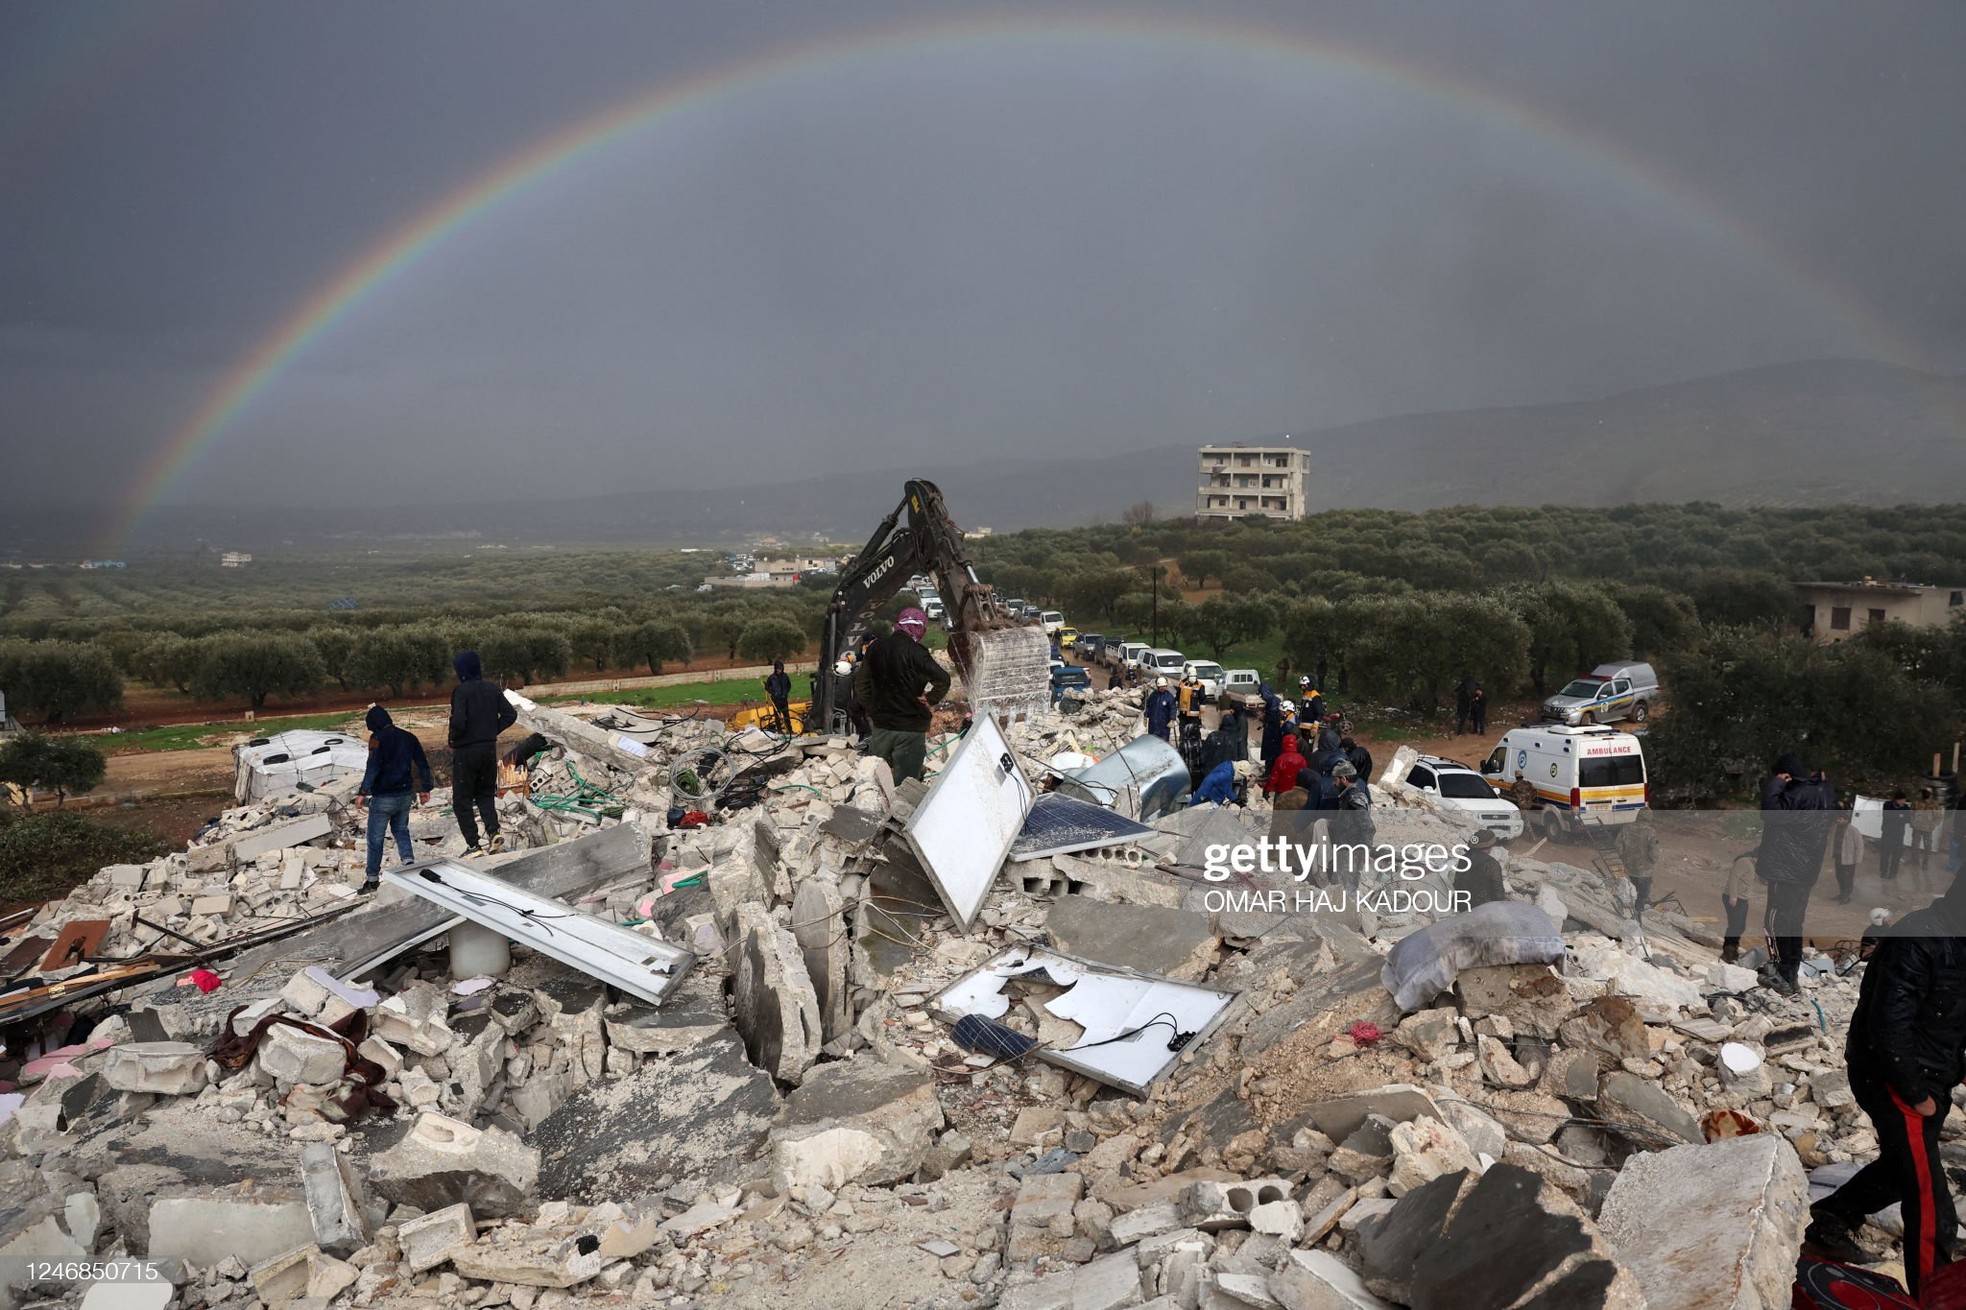 Rơi nước mắt cảnh người dân Thổ Nhĩ Kỳ thẫn thờ bên những tòa nhà vỡ vụn-20